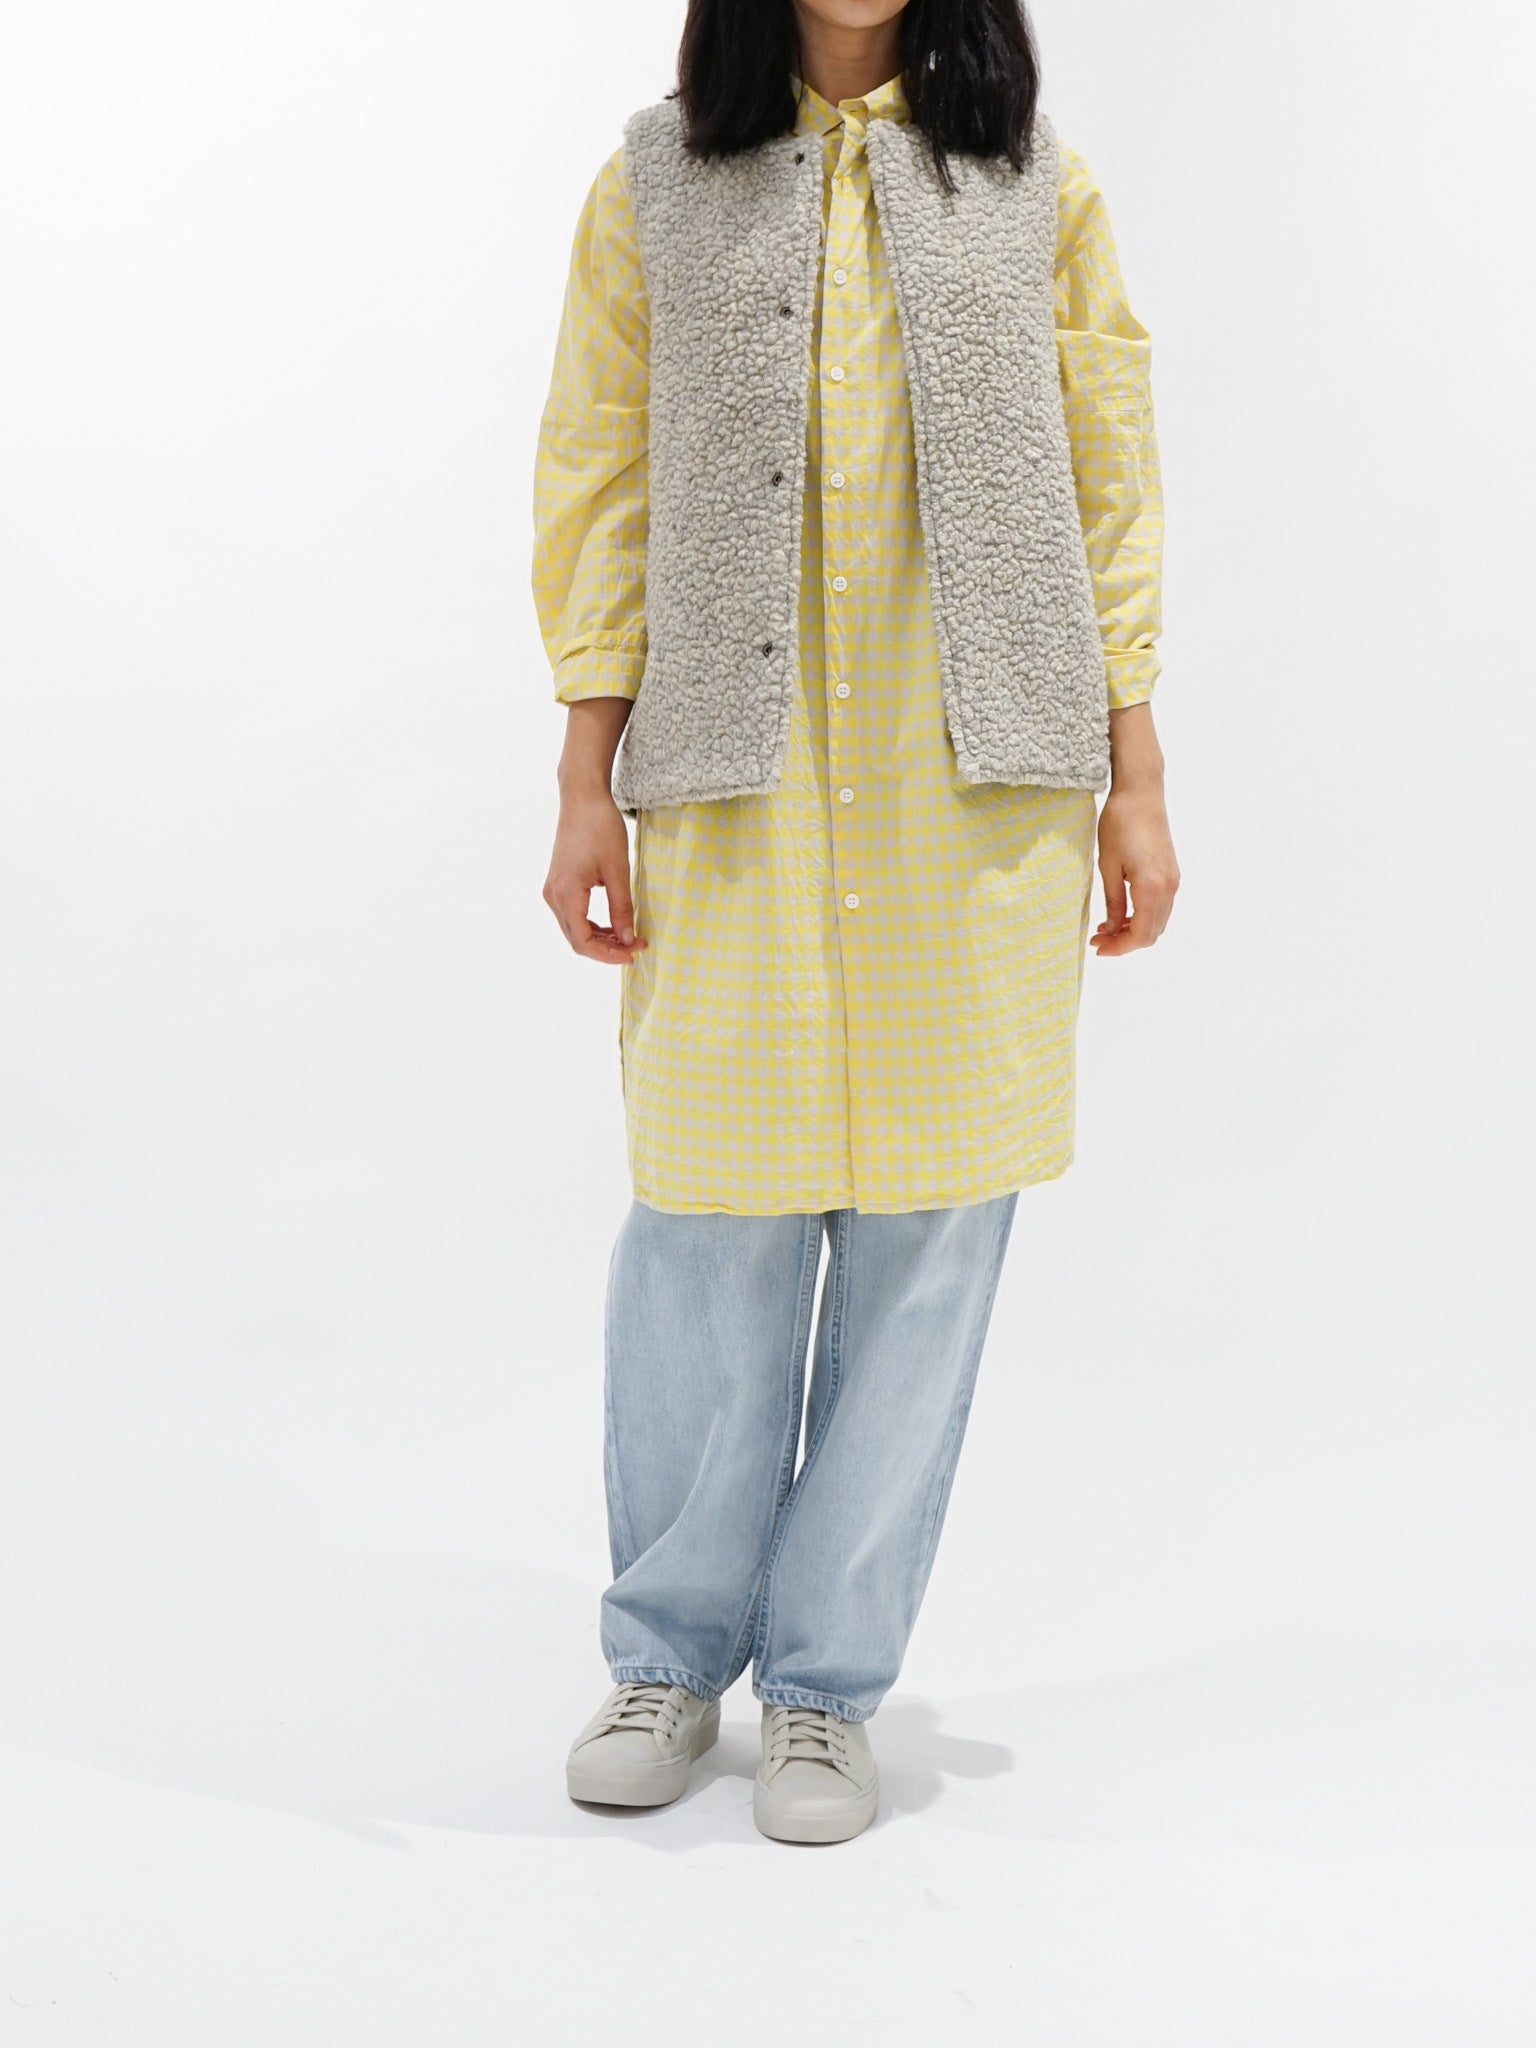 Namu Shop - Veritecoeur Reversible Boa Vest - Gray/Olive